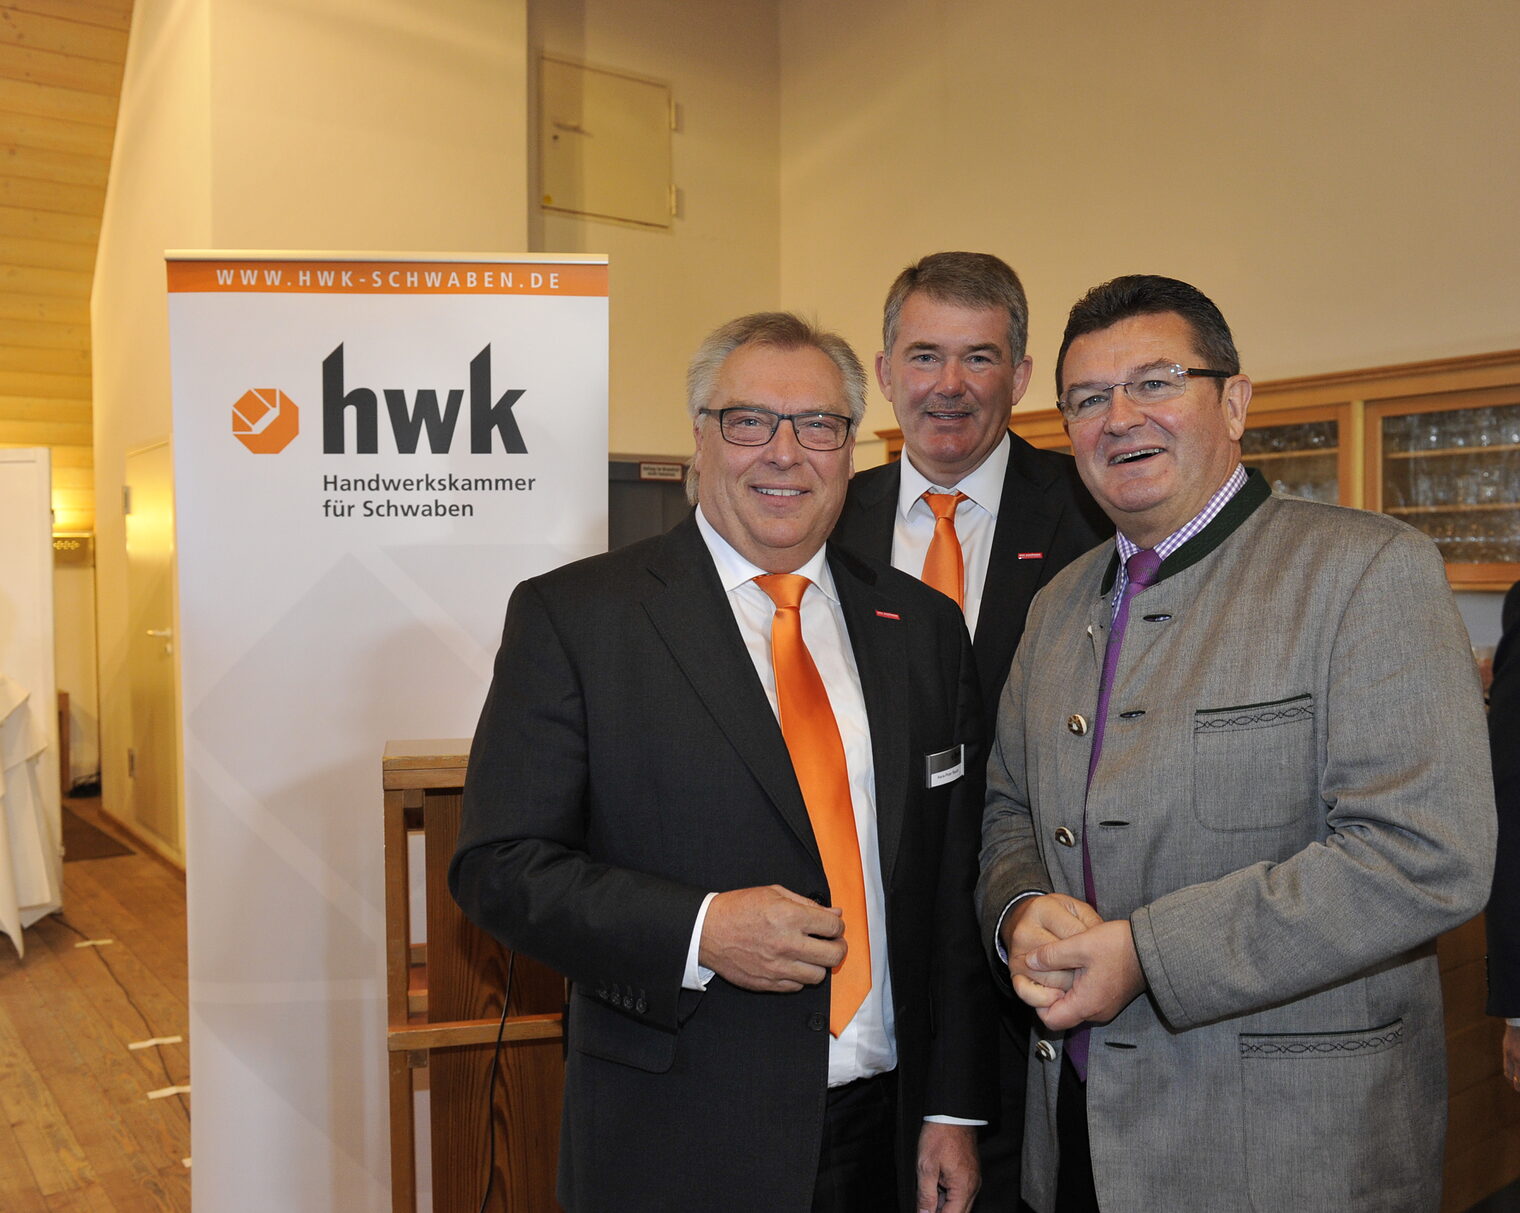 Hans-Peter Rauch, Präsident der HWK Schwaben, Ulrich Wagner, Hauptgeschäftsführer der HWK Schwaben und Staatssekretär im Bayerischen Wirtschaftsministerium Franz Josef Pschierer.